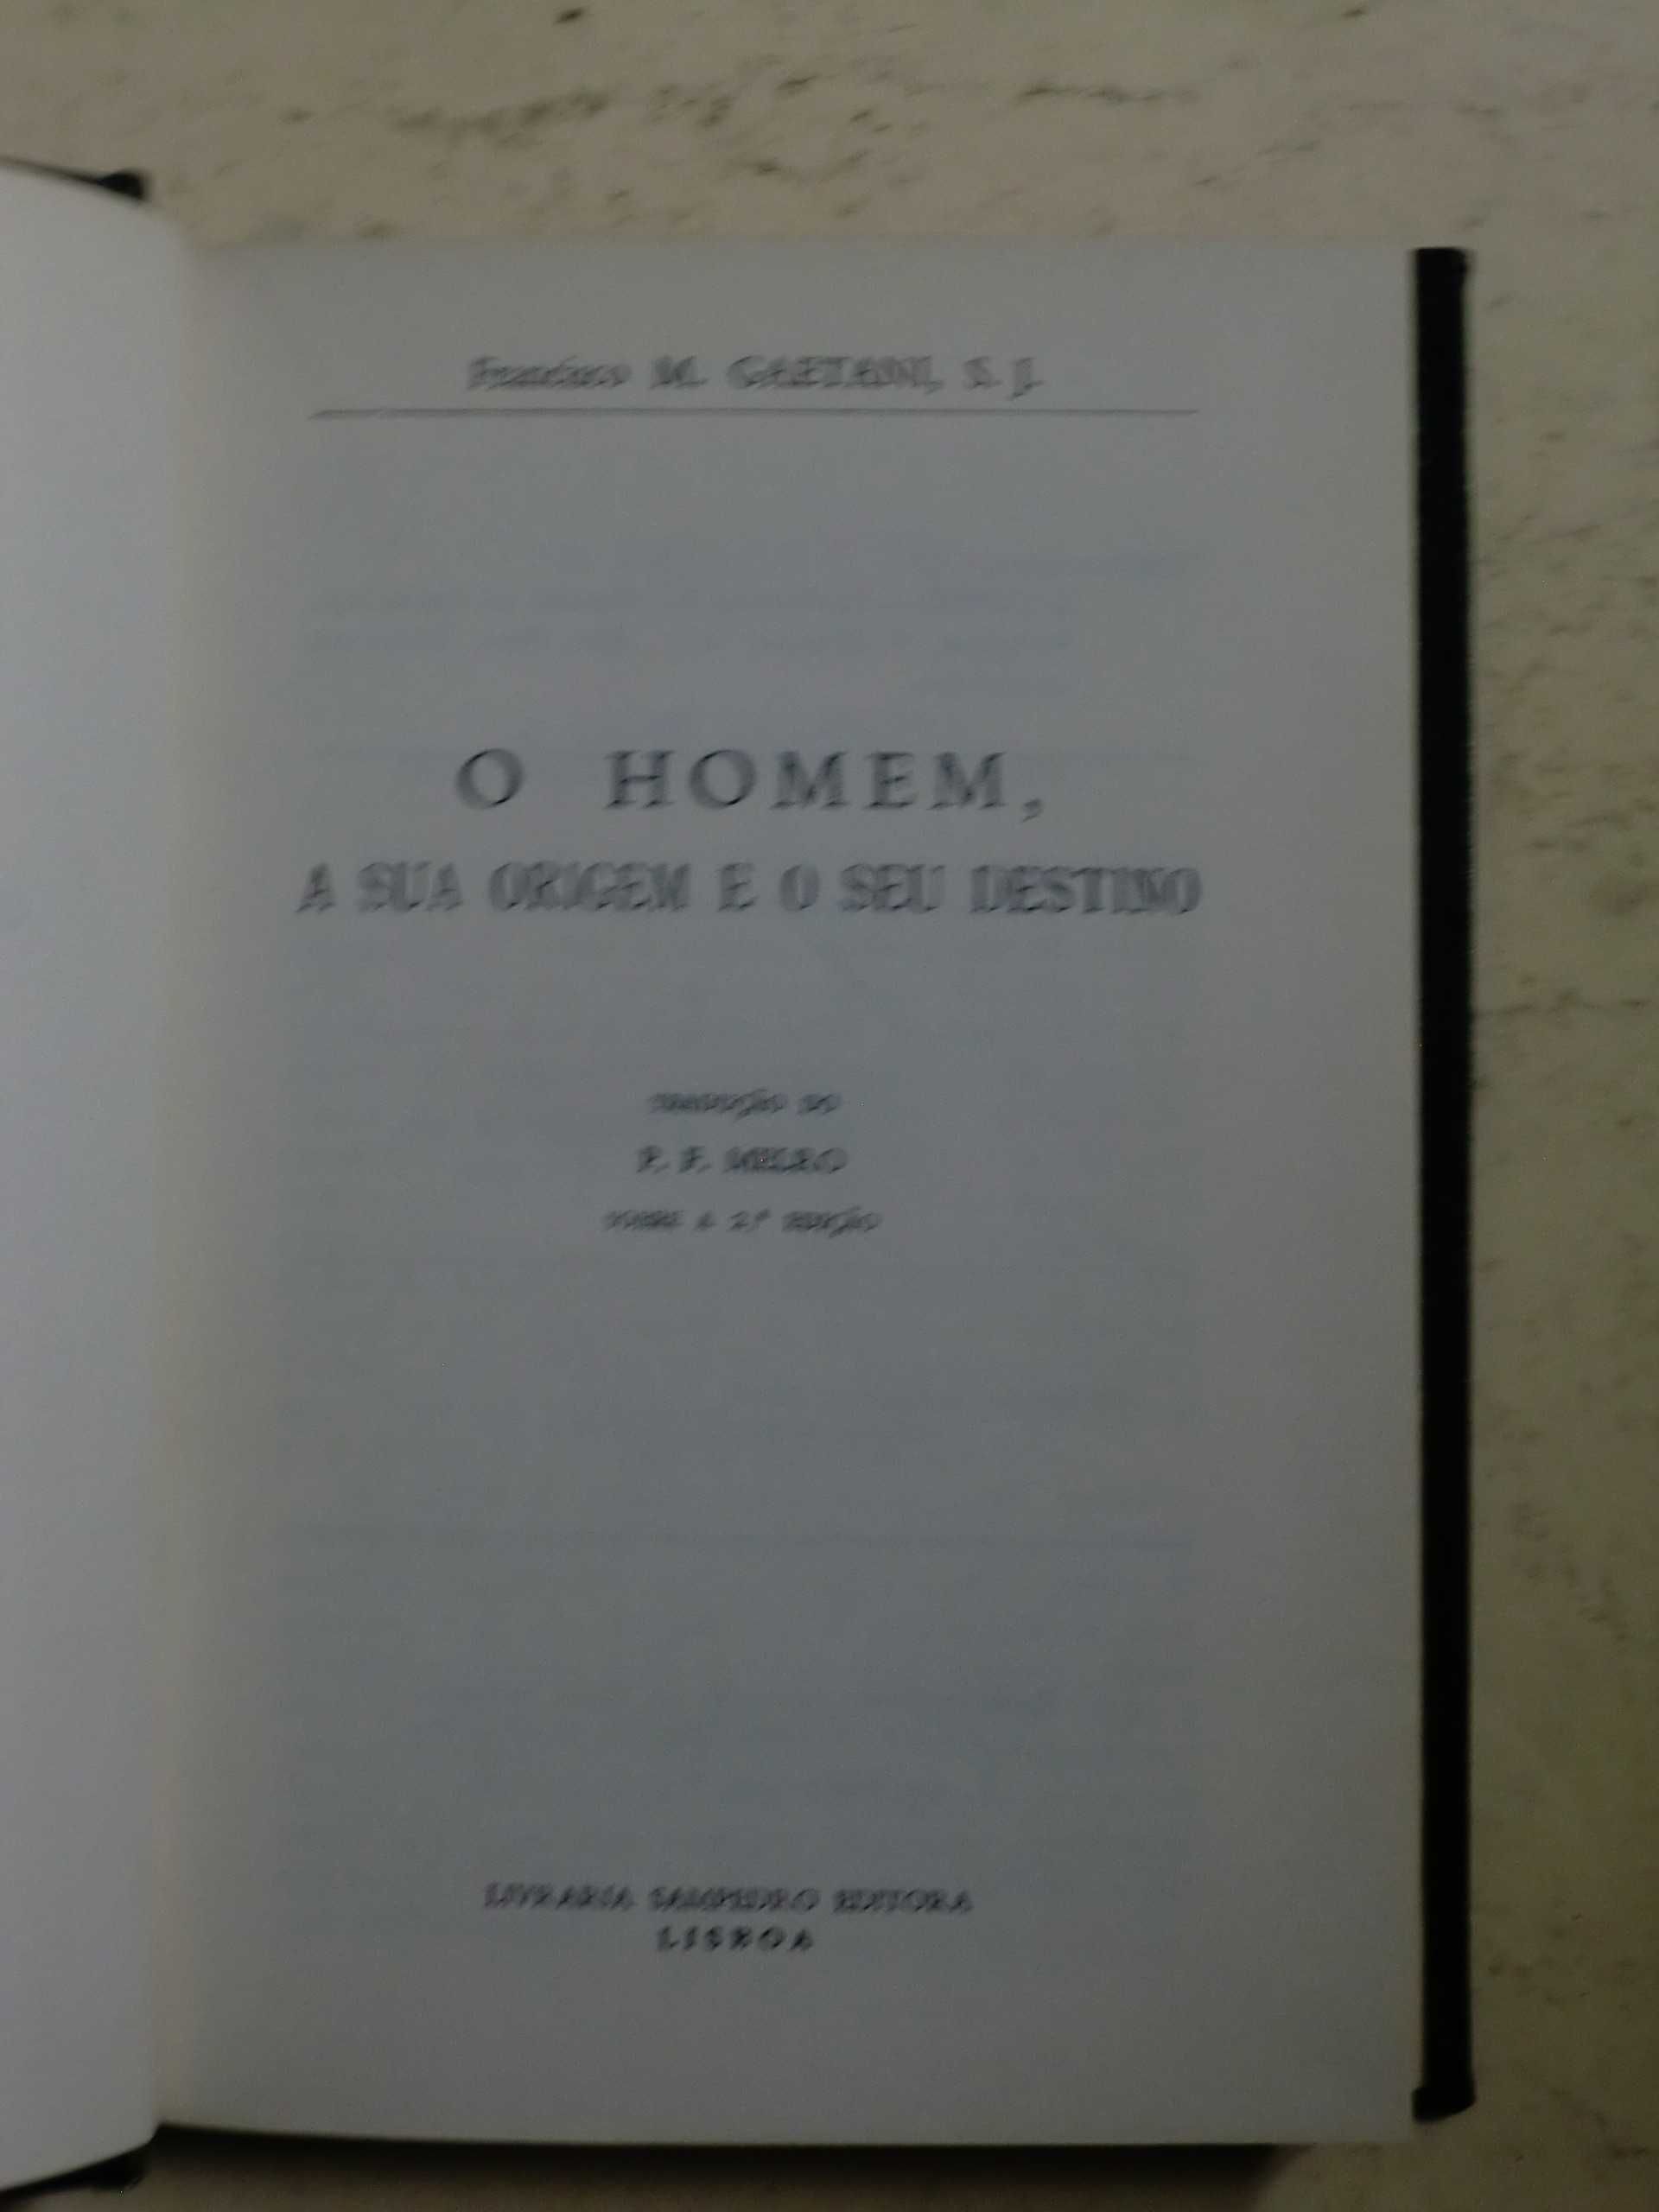 O Homem, a sua origem e o seu destino
de Francisco M. Gaetani